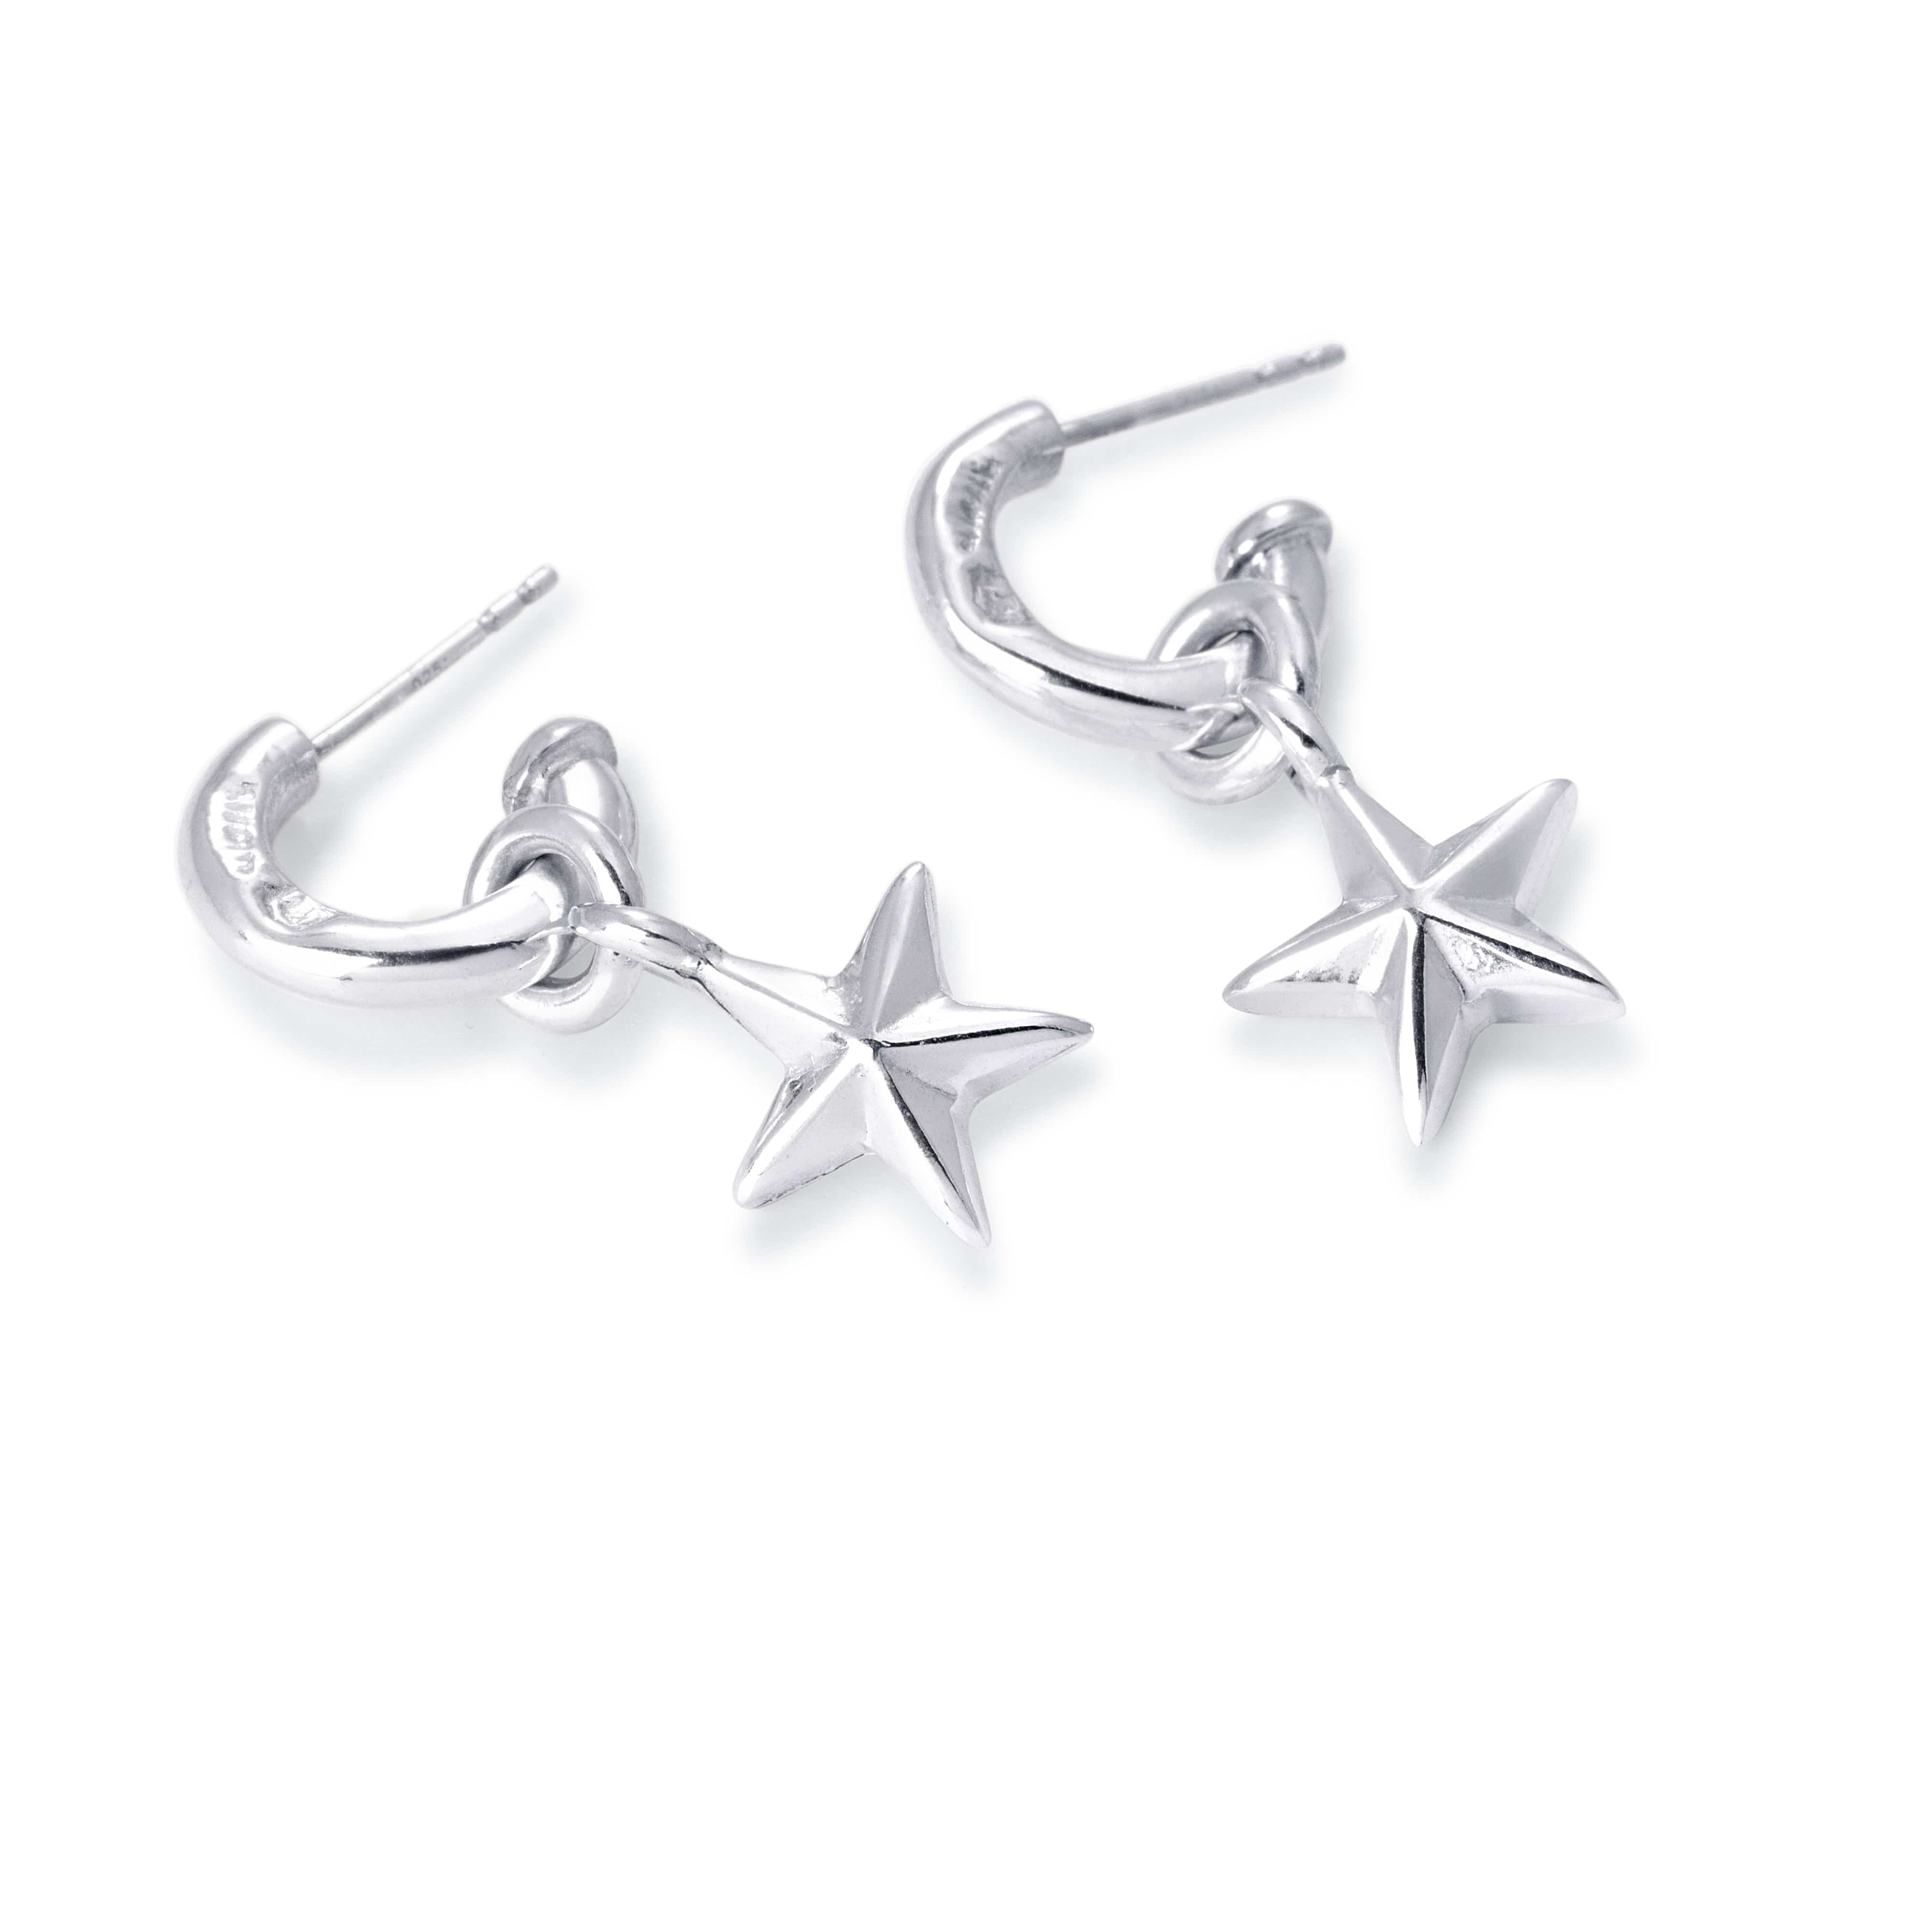 Bloodline Design Mens Earrings Hallmark Hoop Earrings With Star Charms